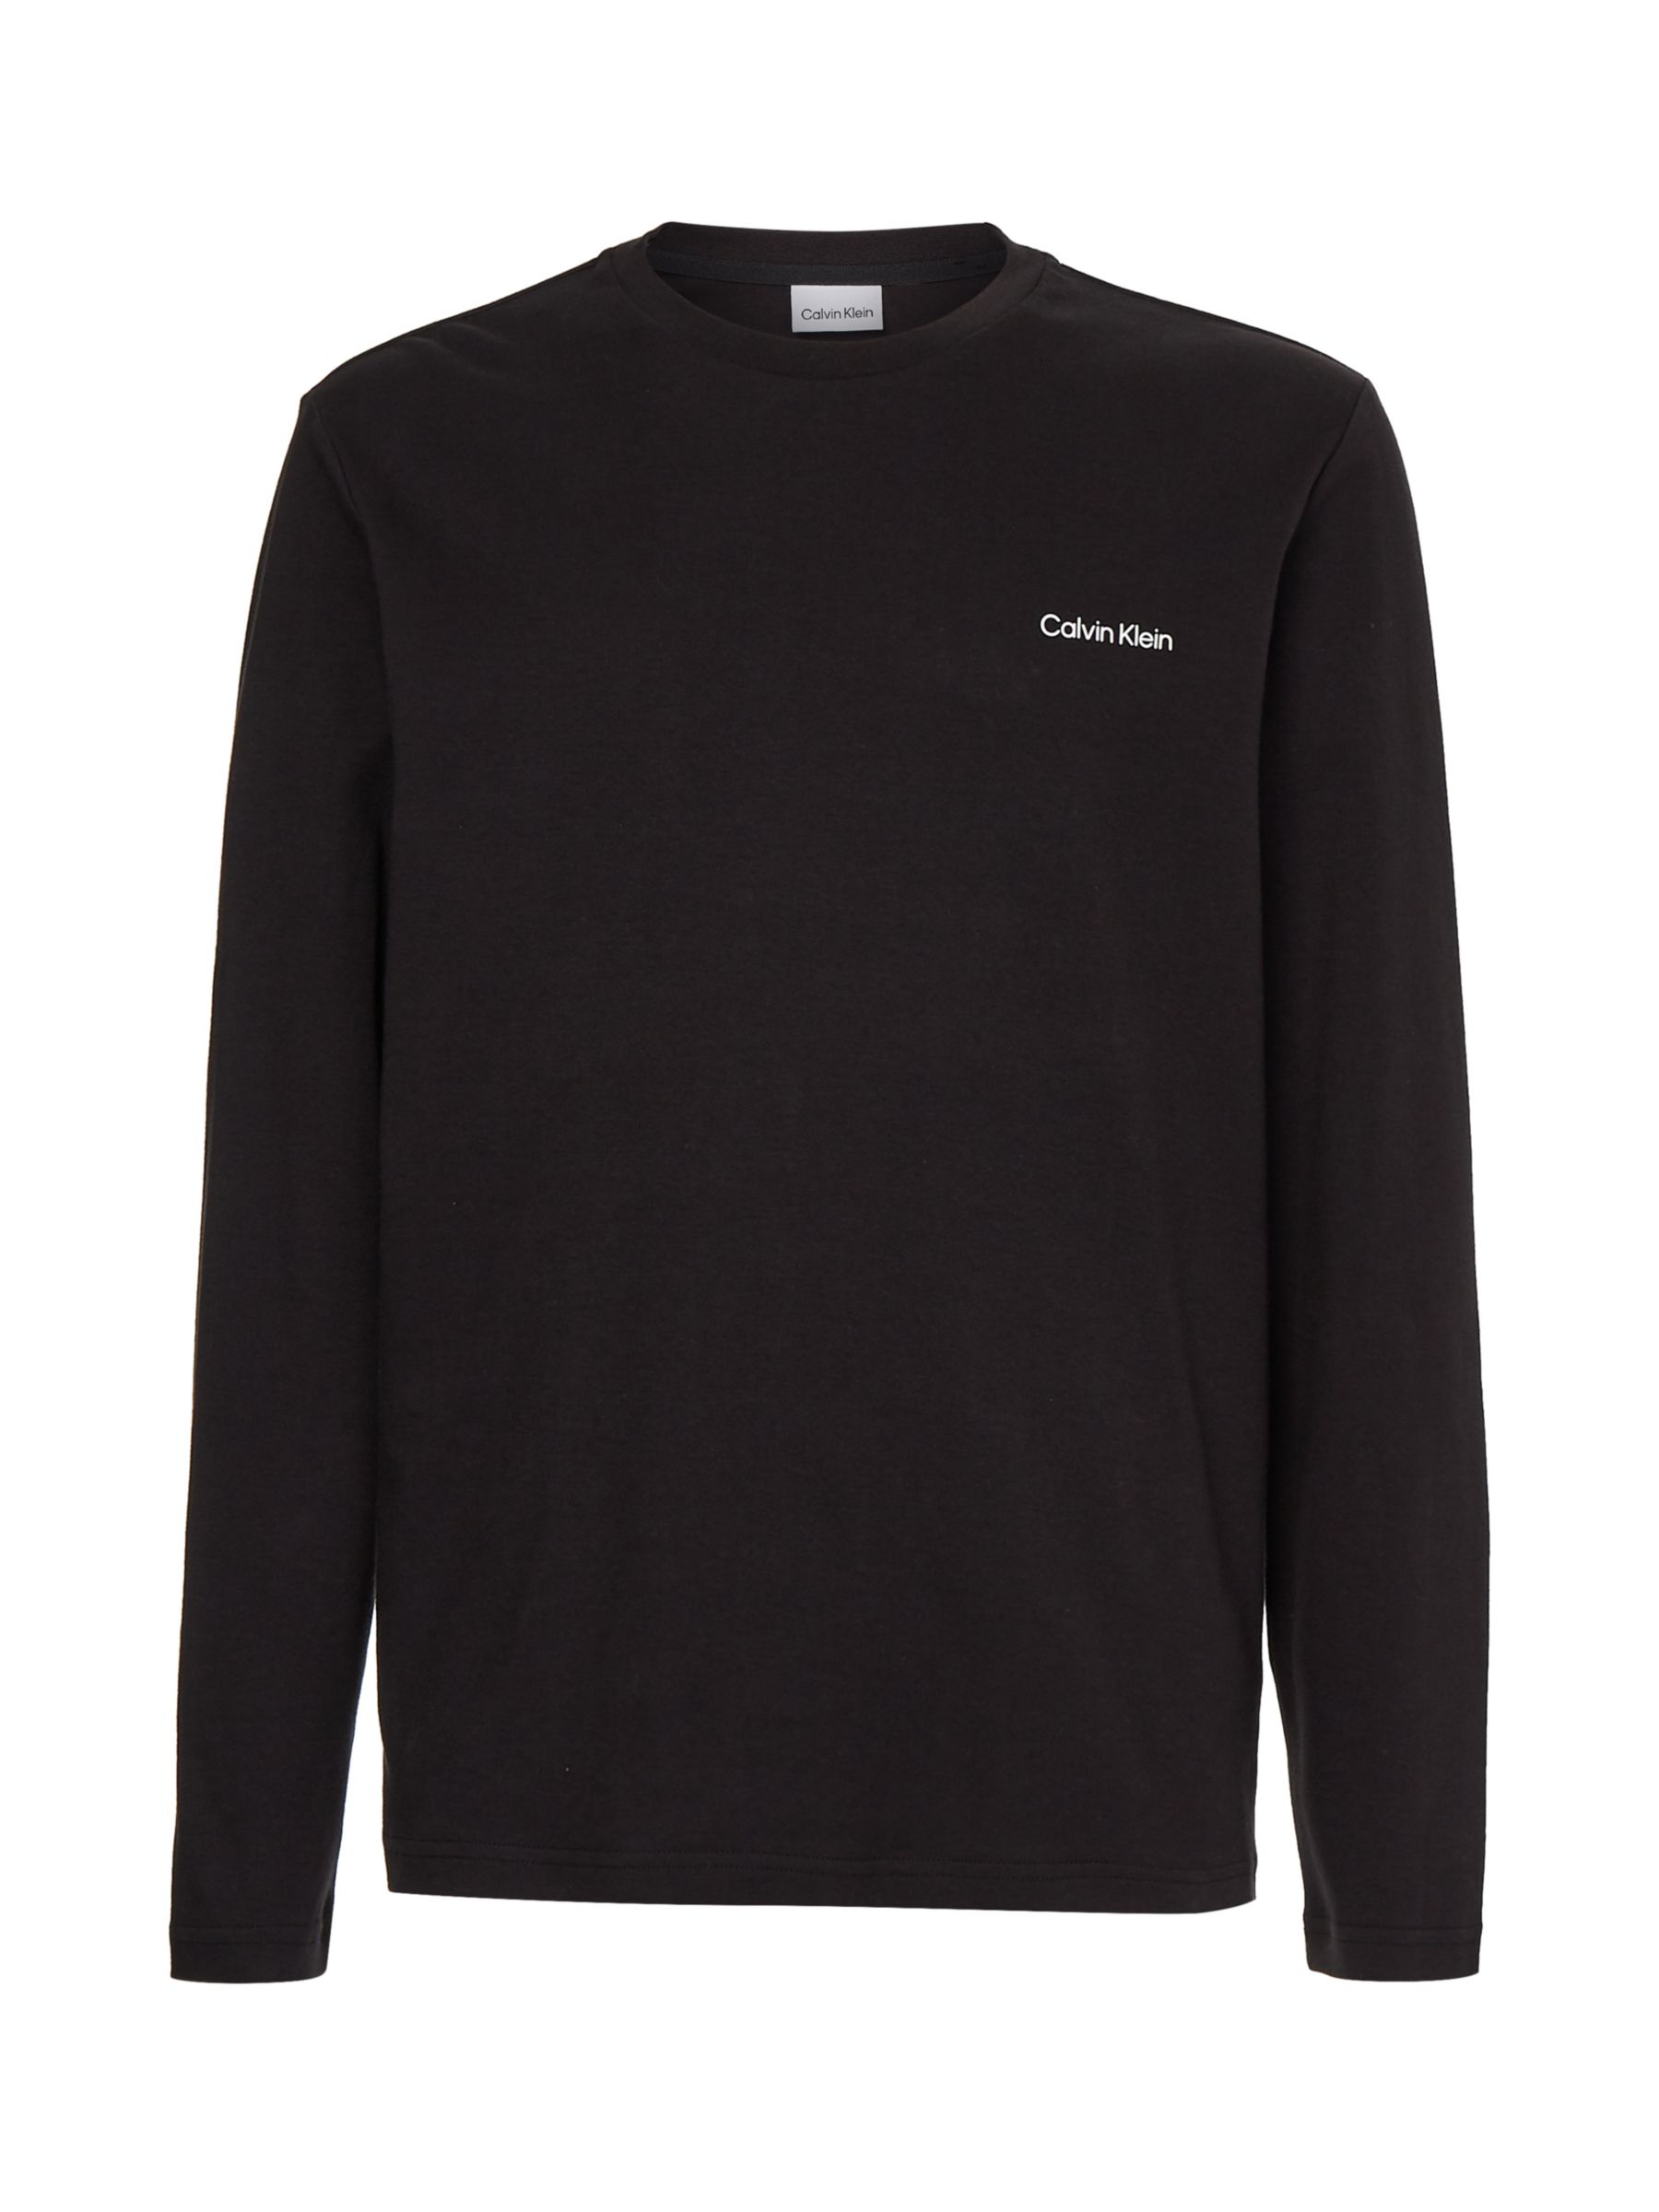 Calvin Klein Interlocking Long Sleeve T-Shirt, CK Black at John Lewis & Partners